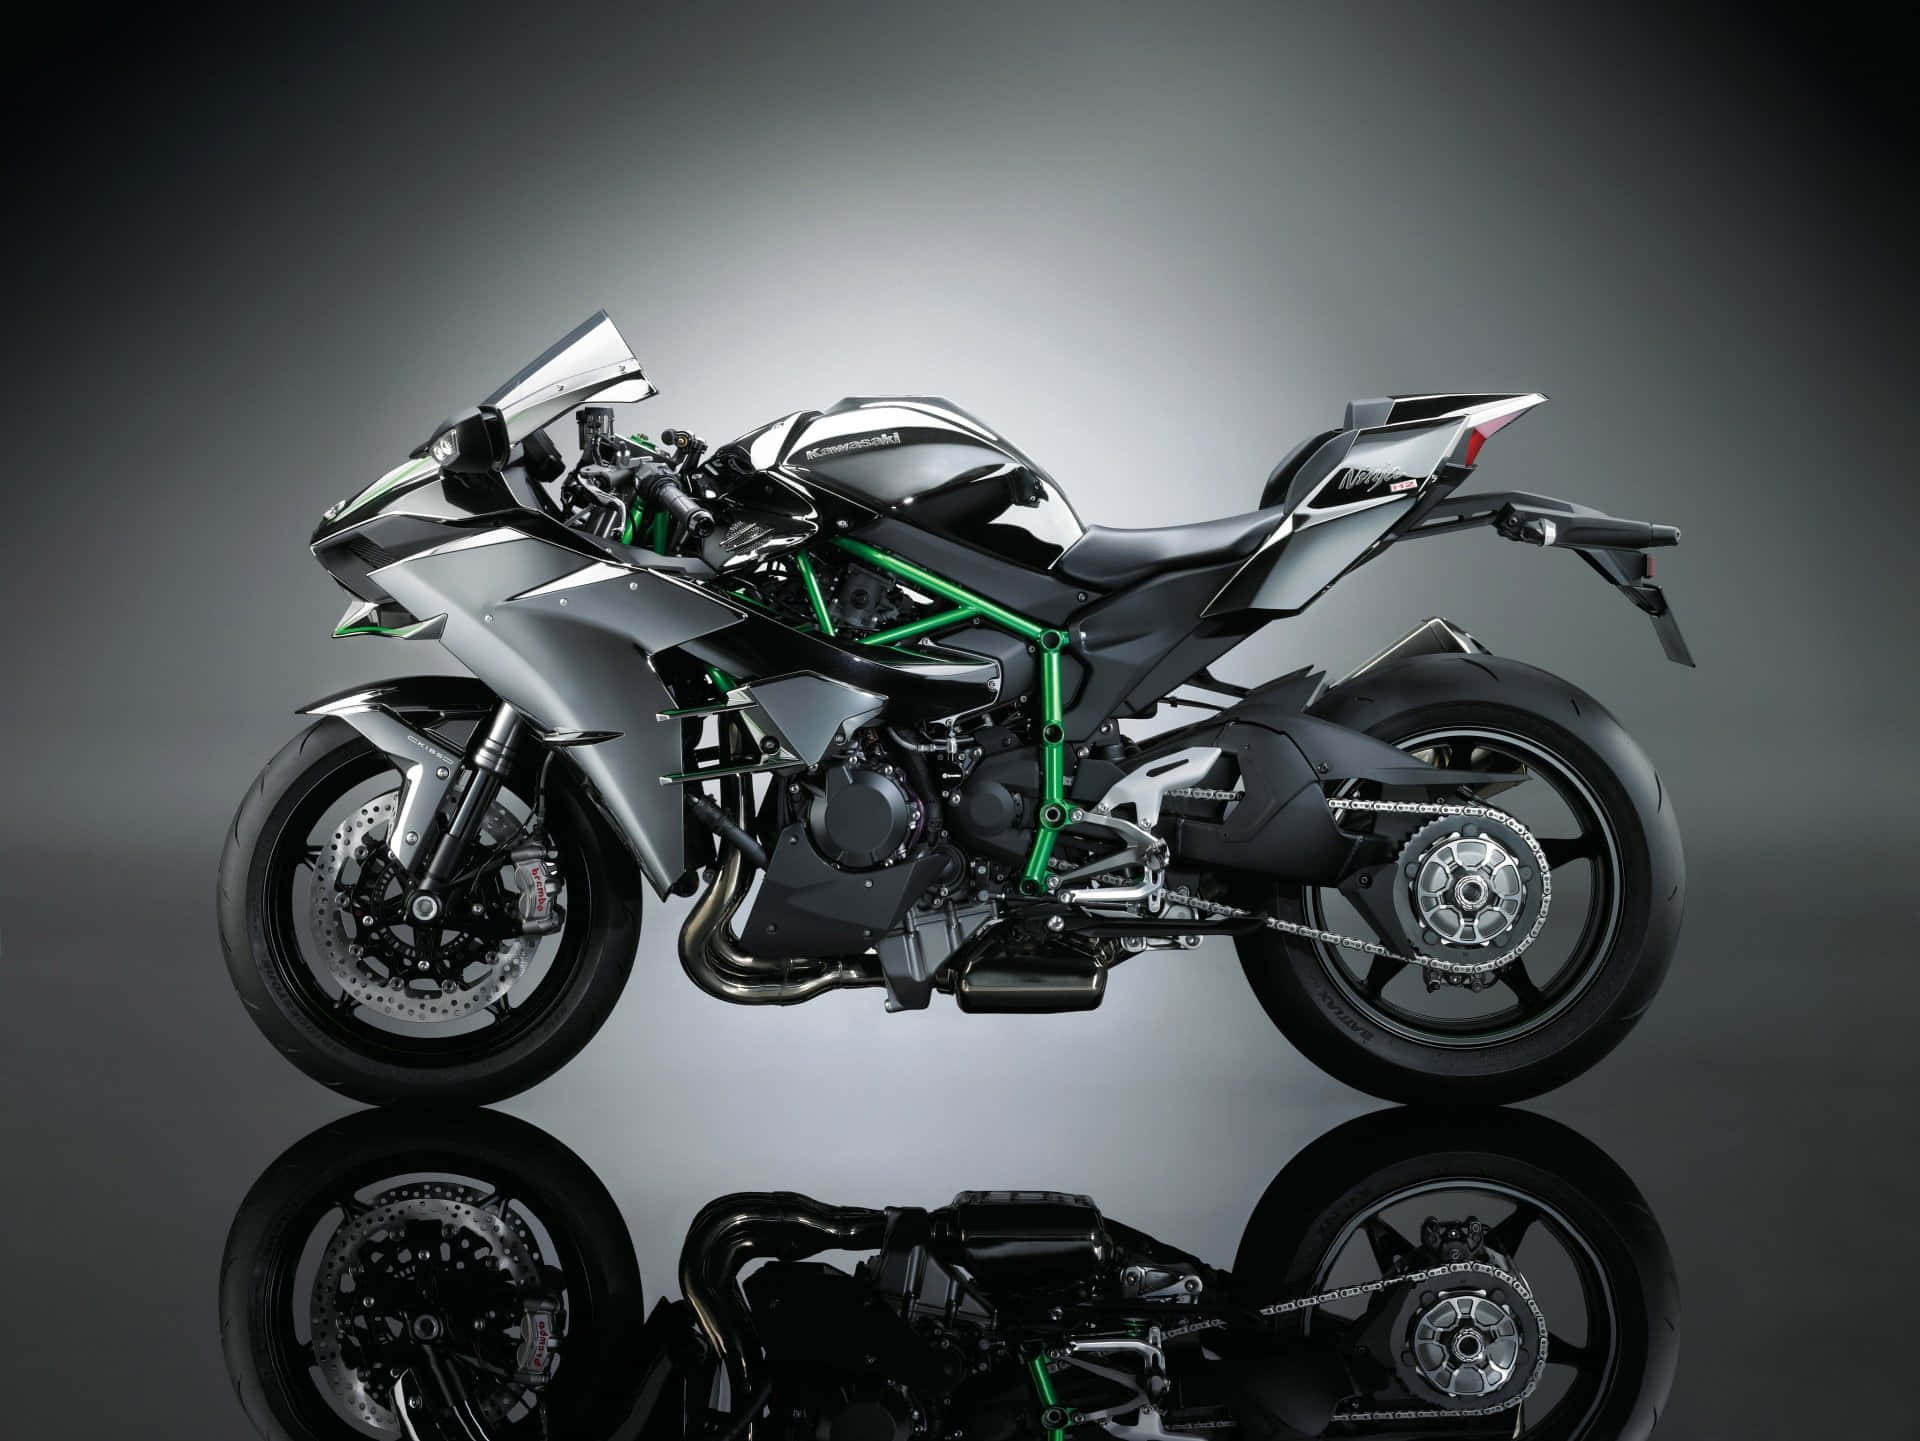 Stunning Kawasaki Motorcycle In Full Throttle Wallpaper